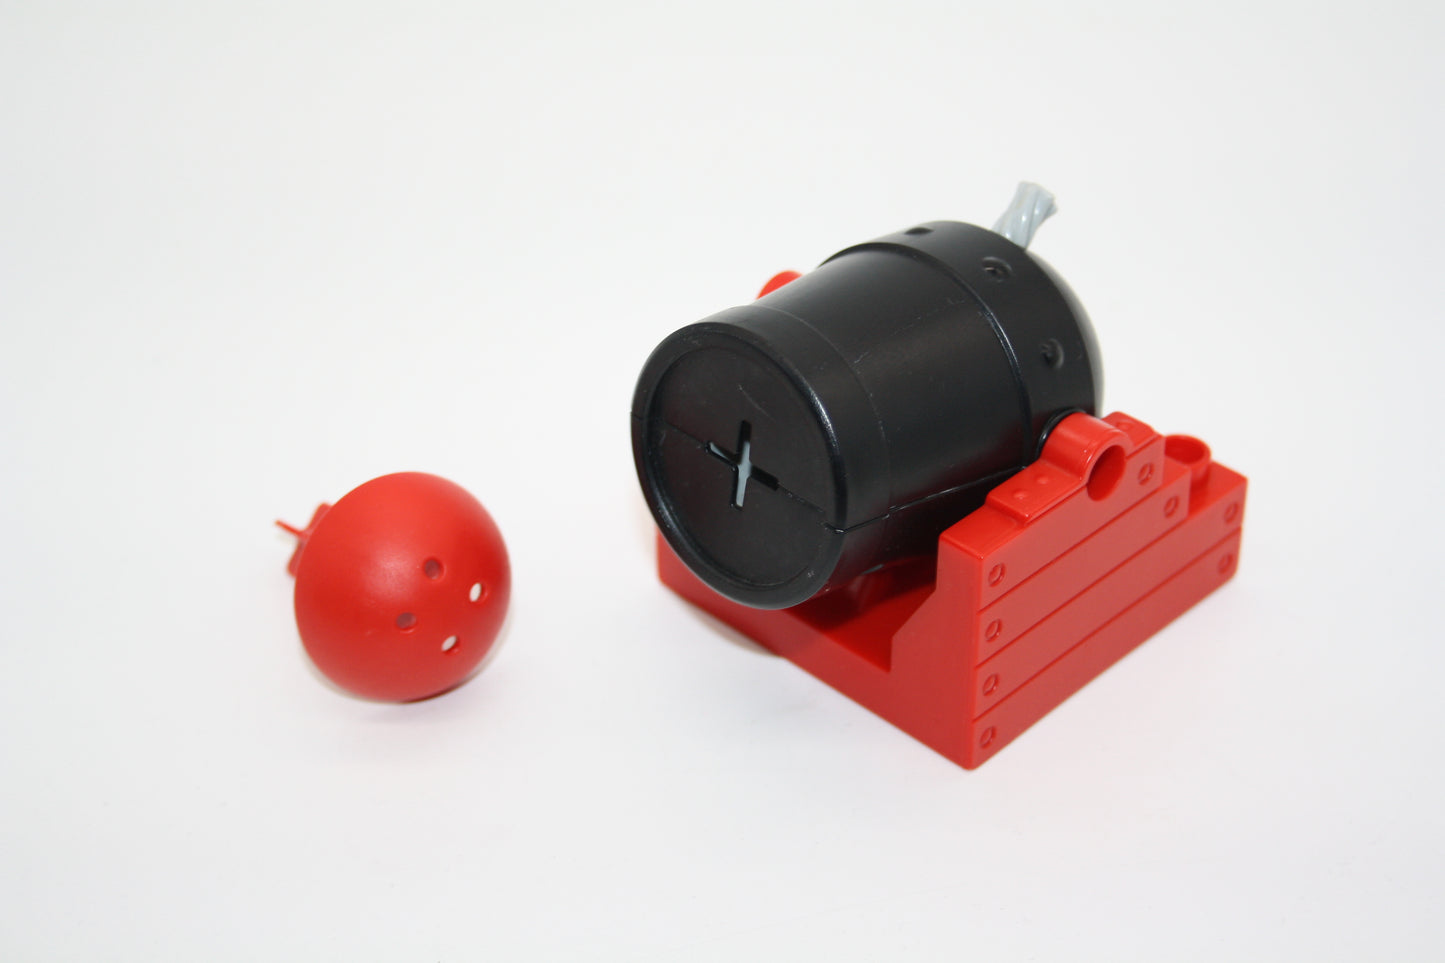 Duplo - Kanone mit Abschuss Funktion - rot/schwarz - zuf. Farbe des Pfeils- Zusammengebaut